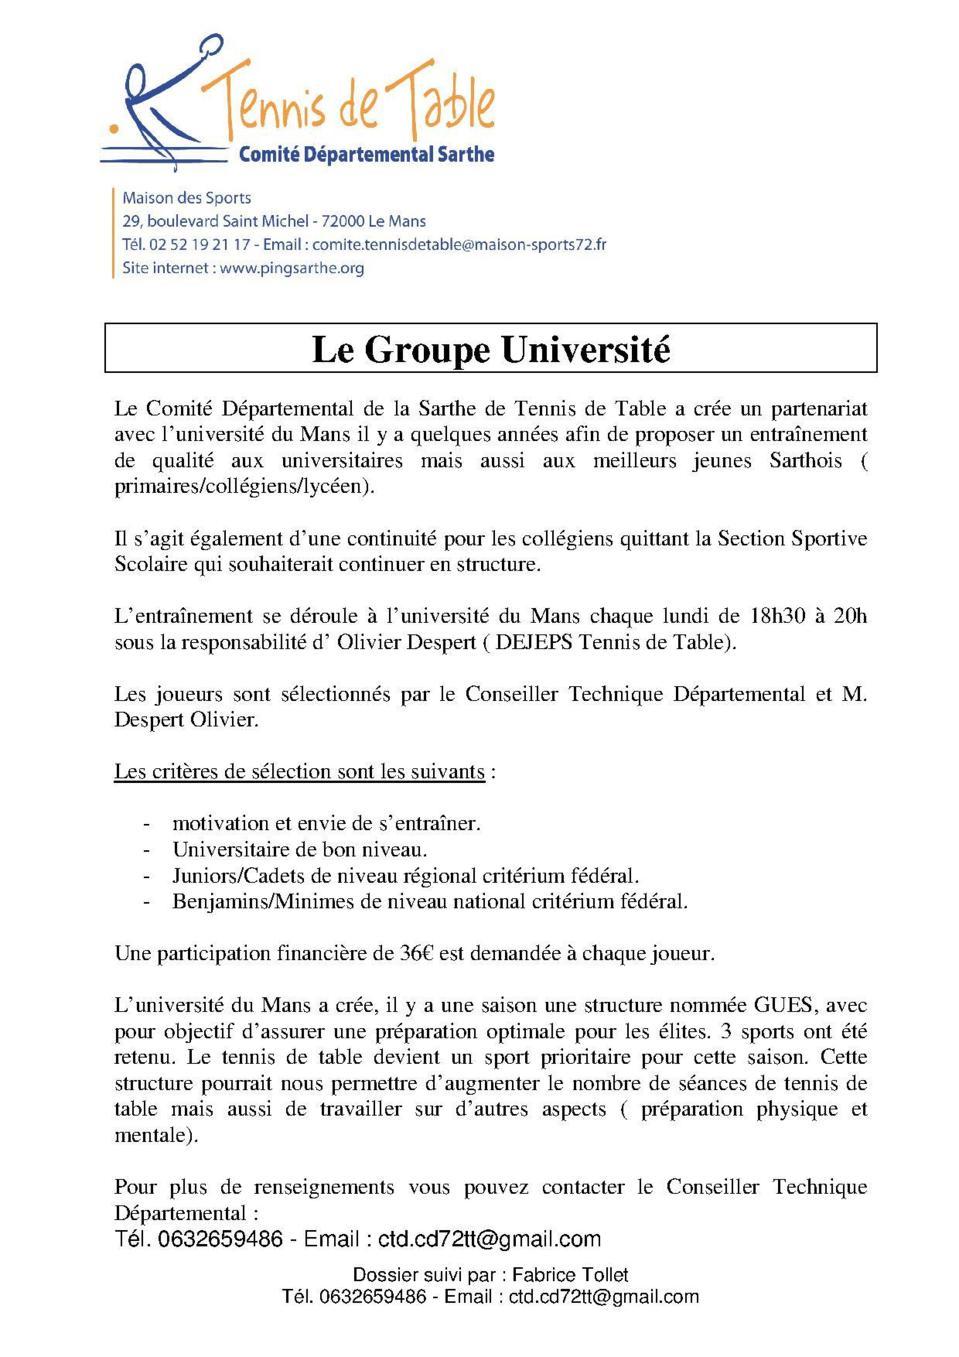 Groupe Université